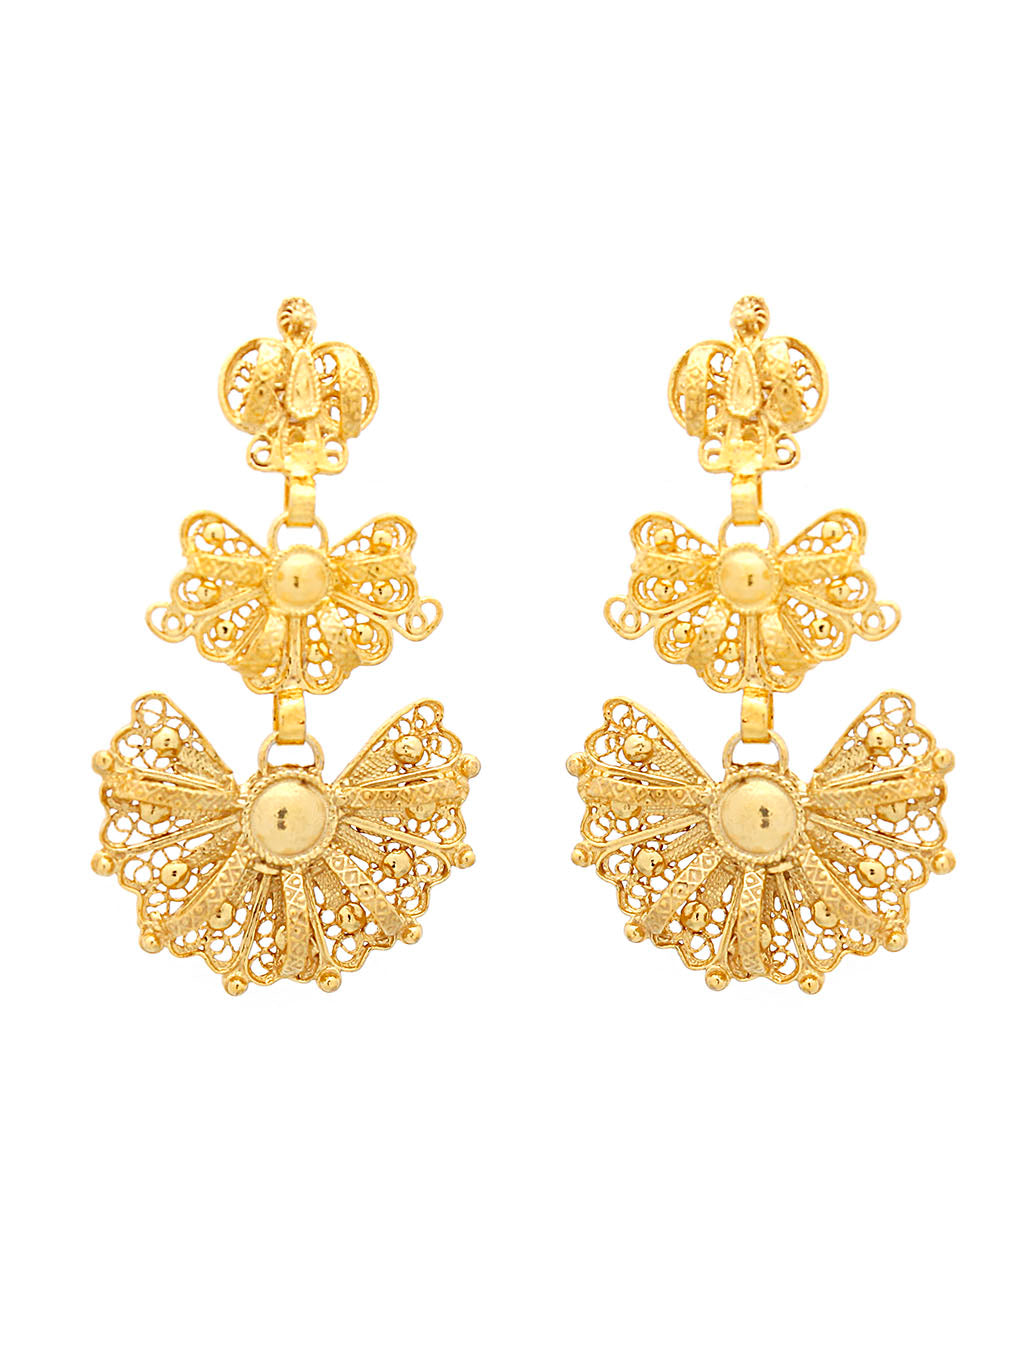 Galician earrings